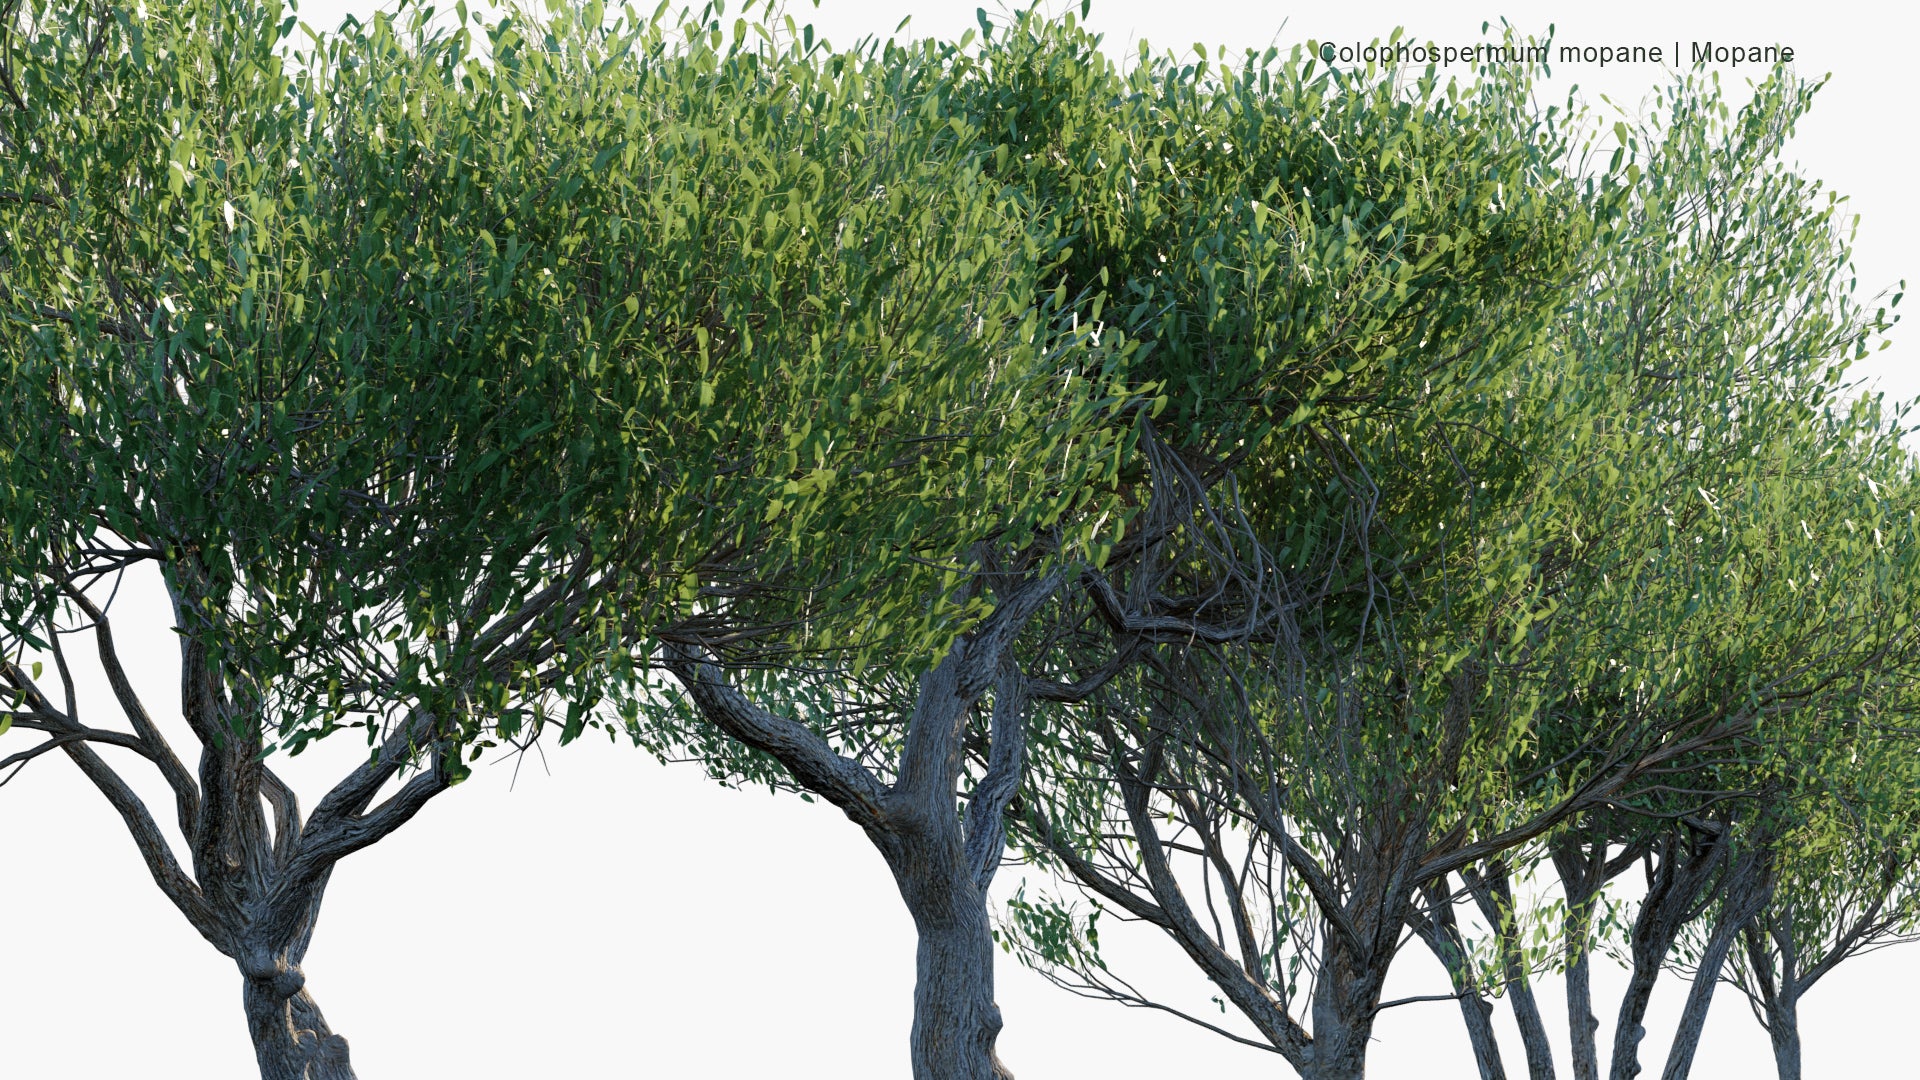 Low Poly Colophospermum Mopane - Mopane, Balsam Tree, Butterfly Tree, Turpentine Tree (3D Model)